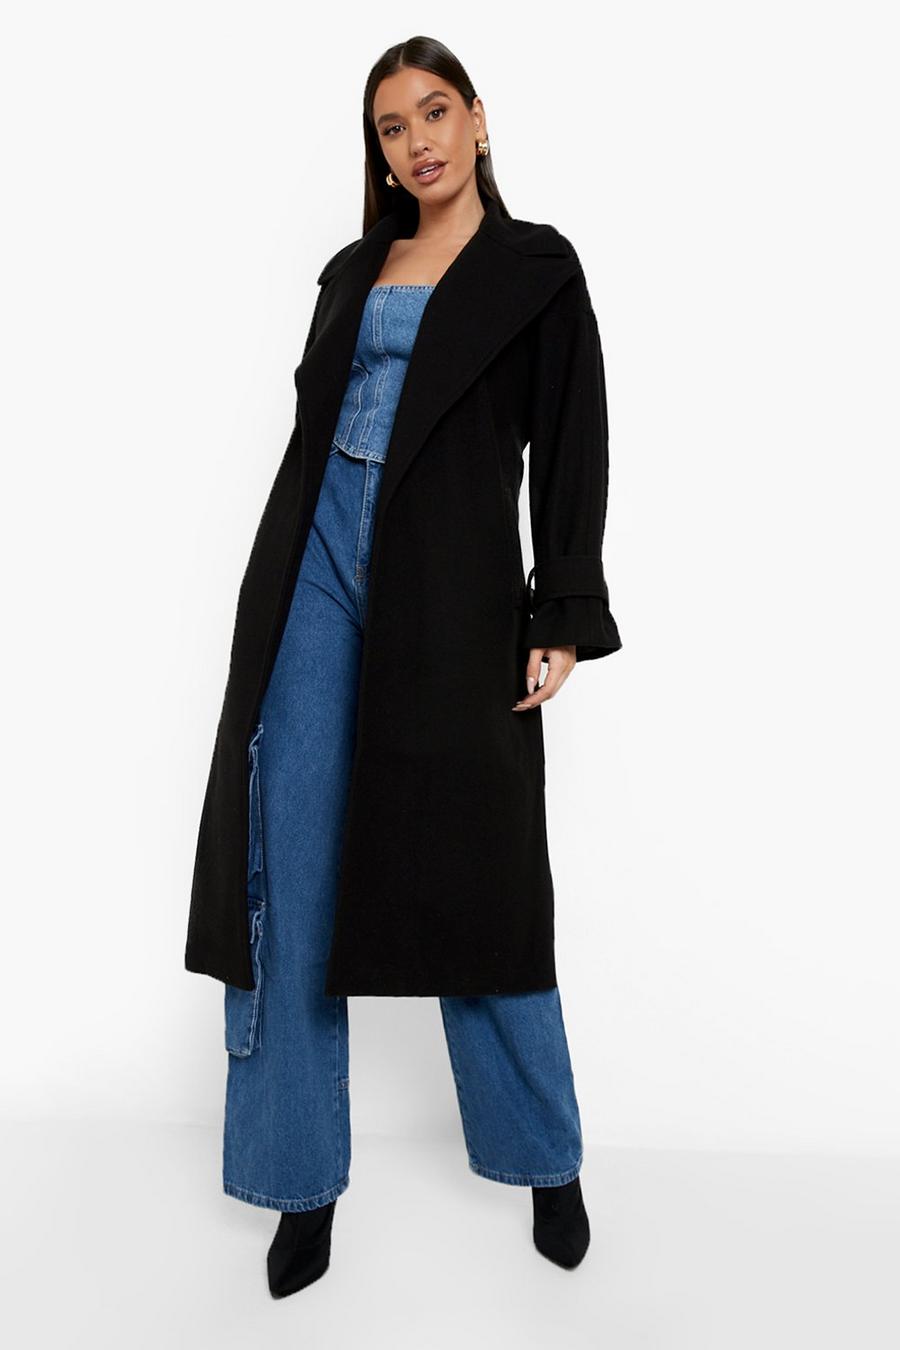 Trench Coats | Black & Hooded Women's Coats | boohoo Australia